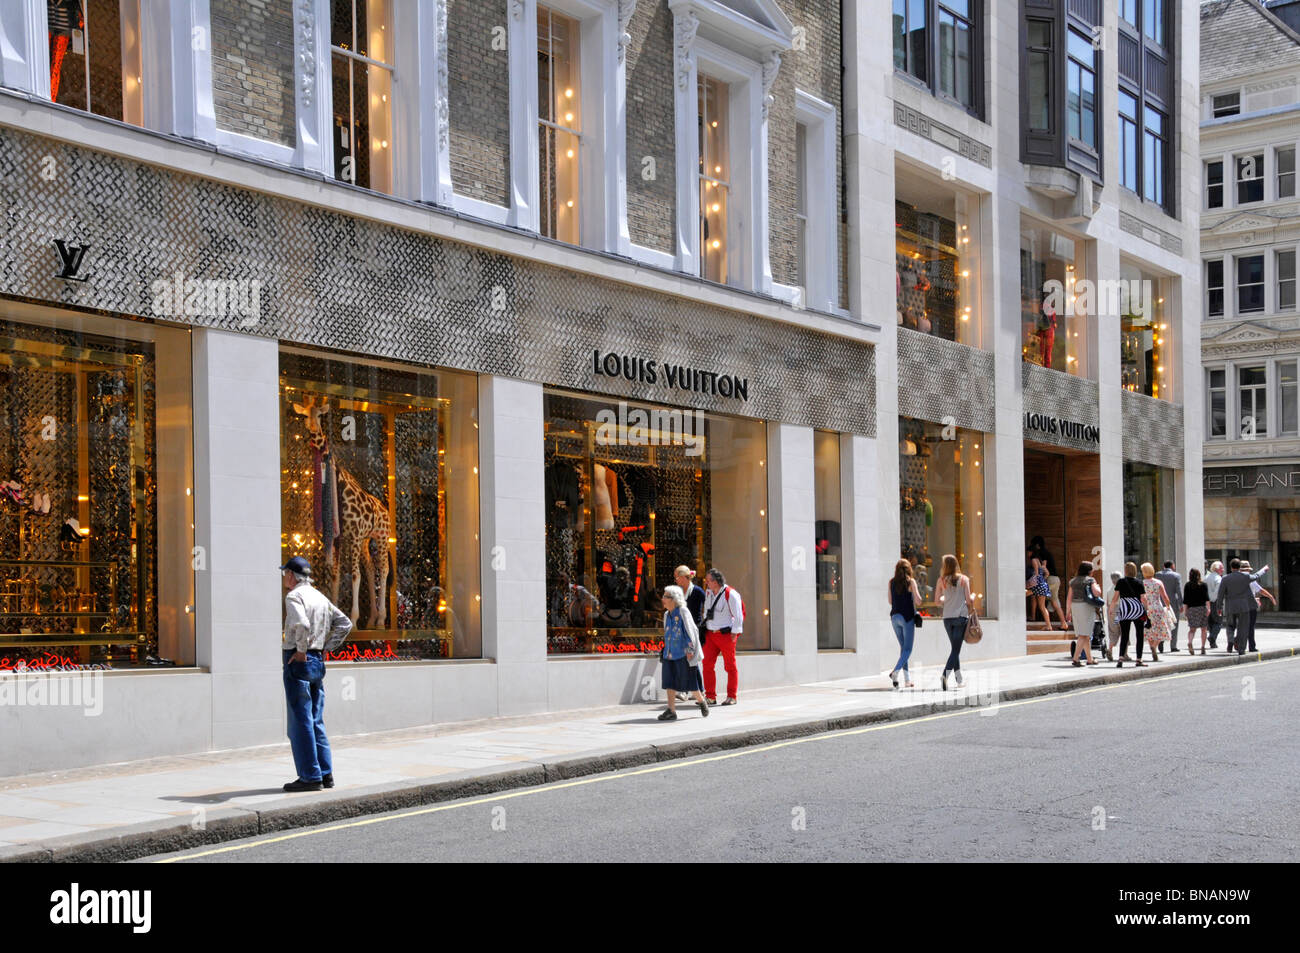 Louis Vuitton magasin de mode de luxe français avant et fenêtre décorée affiche le jour d'été ensoleillé dans New Bond Street Mayfair West End Londres Angleterre Royaume-Uni Banque D'Images